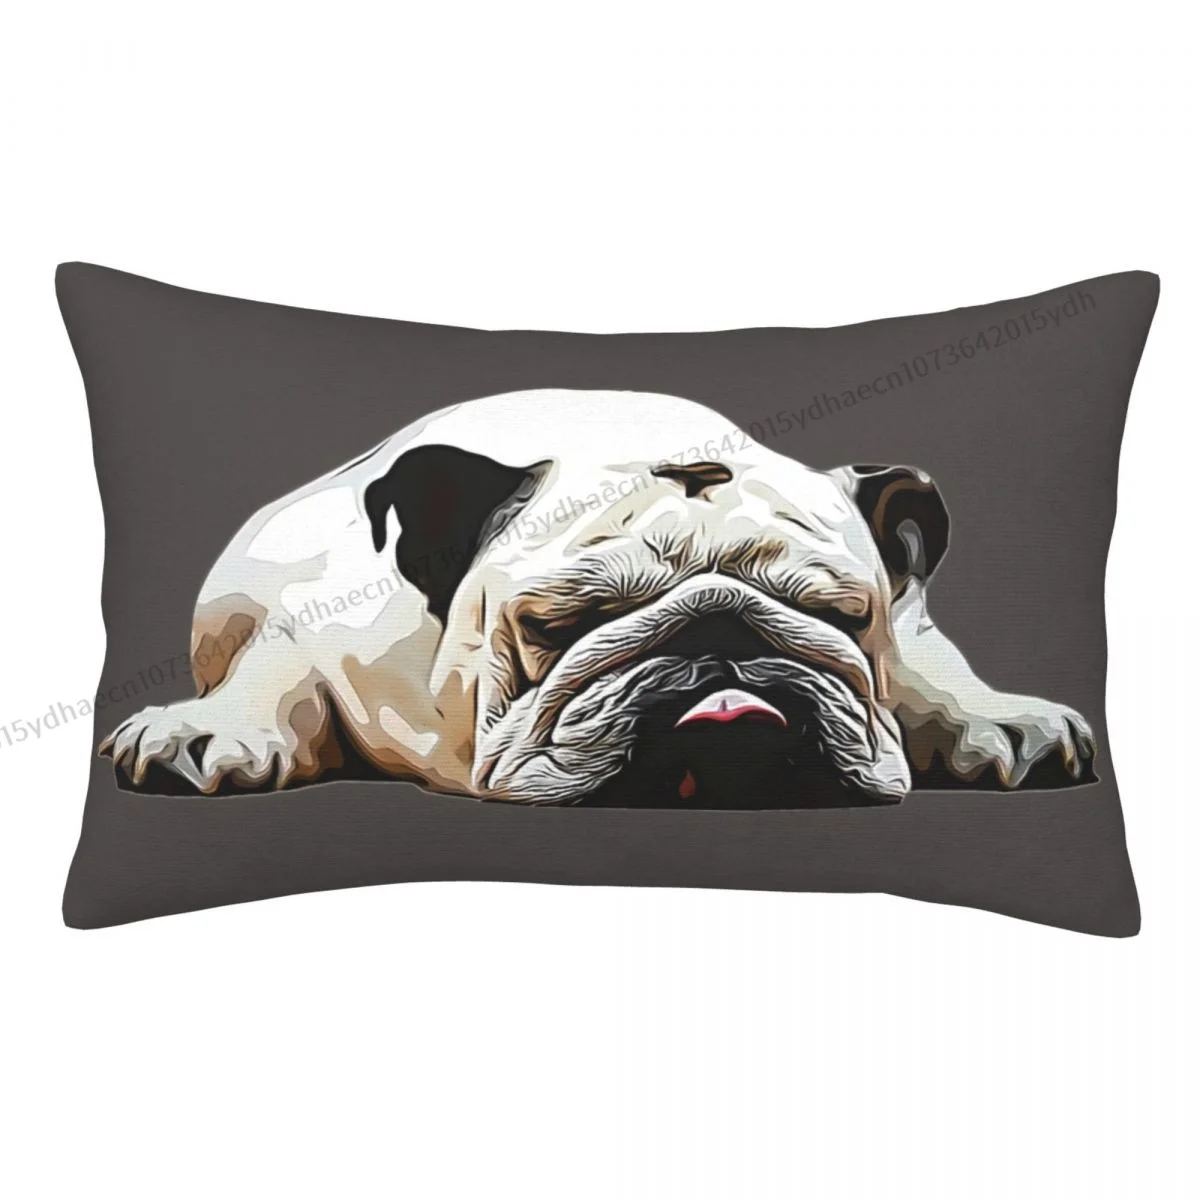 

English Bulldog Cojines Pillowcase Cushion Home Sofa Chair Print Decorative Coussin Pillow Covers